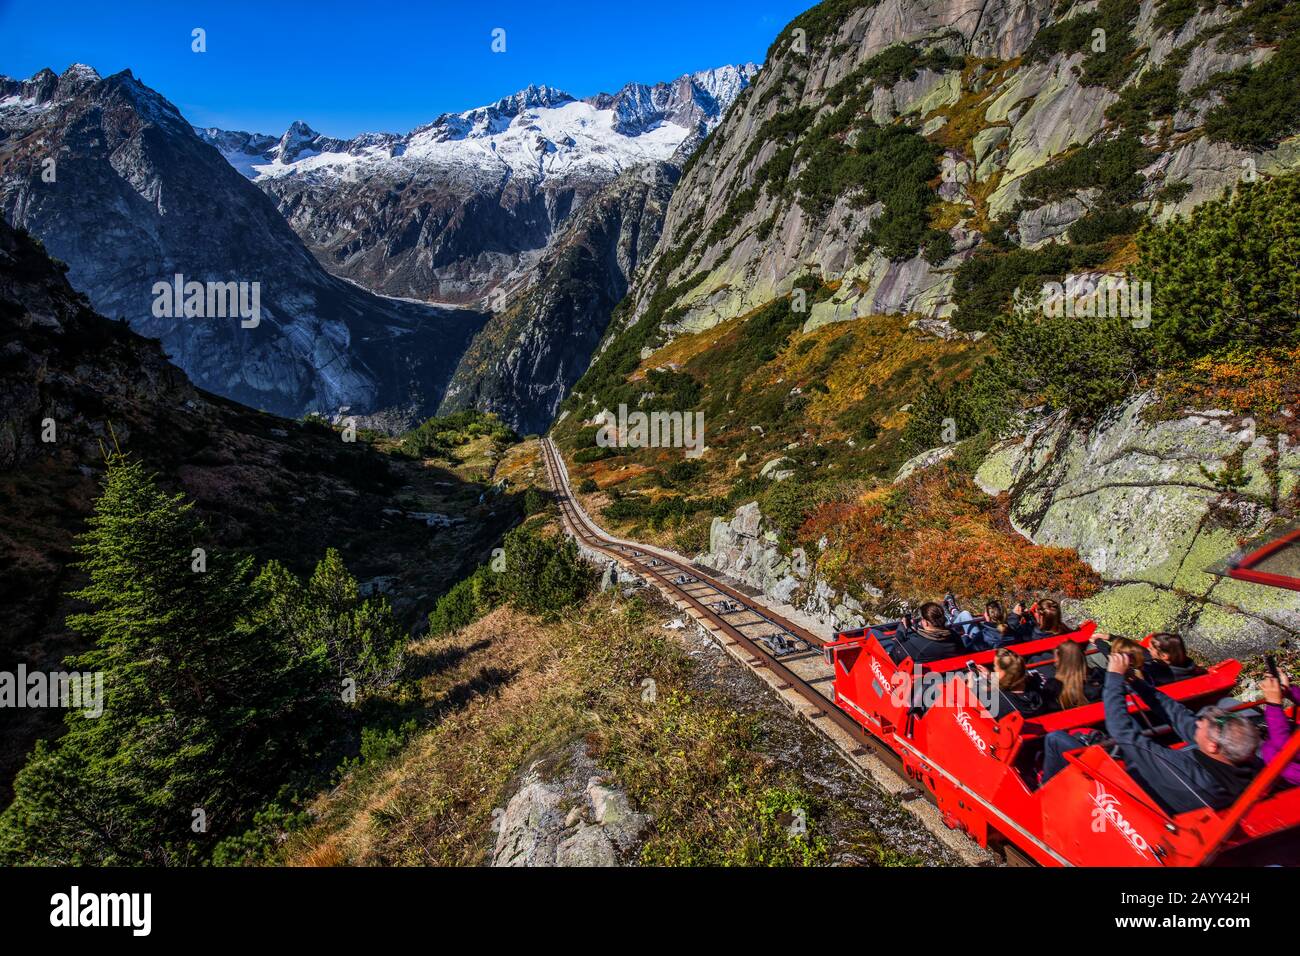 HANDEGG, SVIZZERA - Ottobre 2019 - Gelmerbahn vicino al passo Grimsel nelle Alpi svizzere, Gelmersee, Svizzera, Oberland bernese, Svizzera. Foto Stock